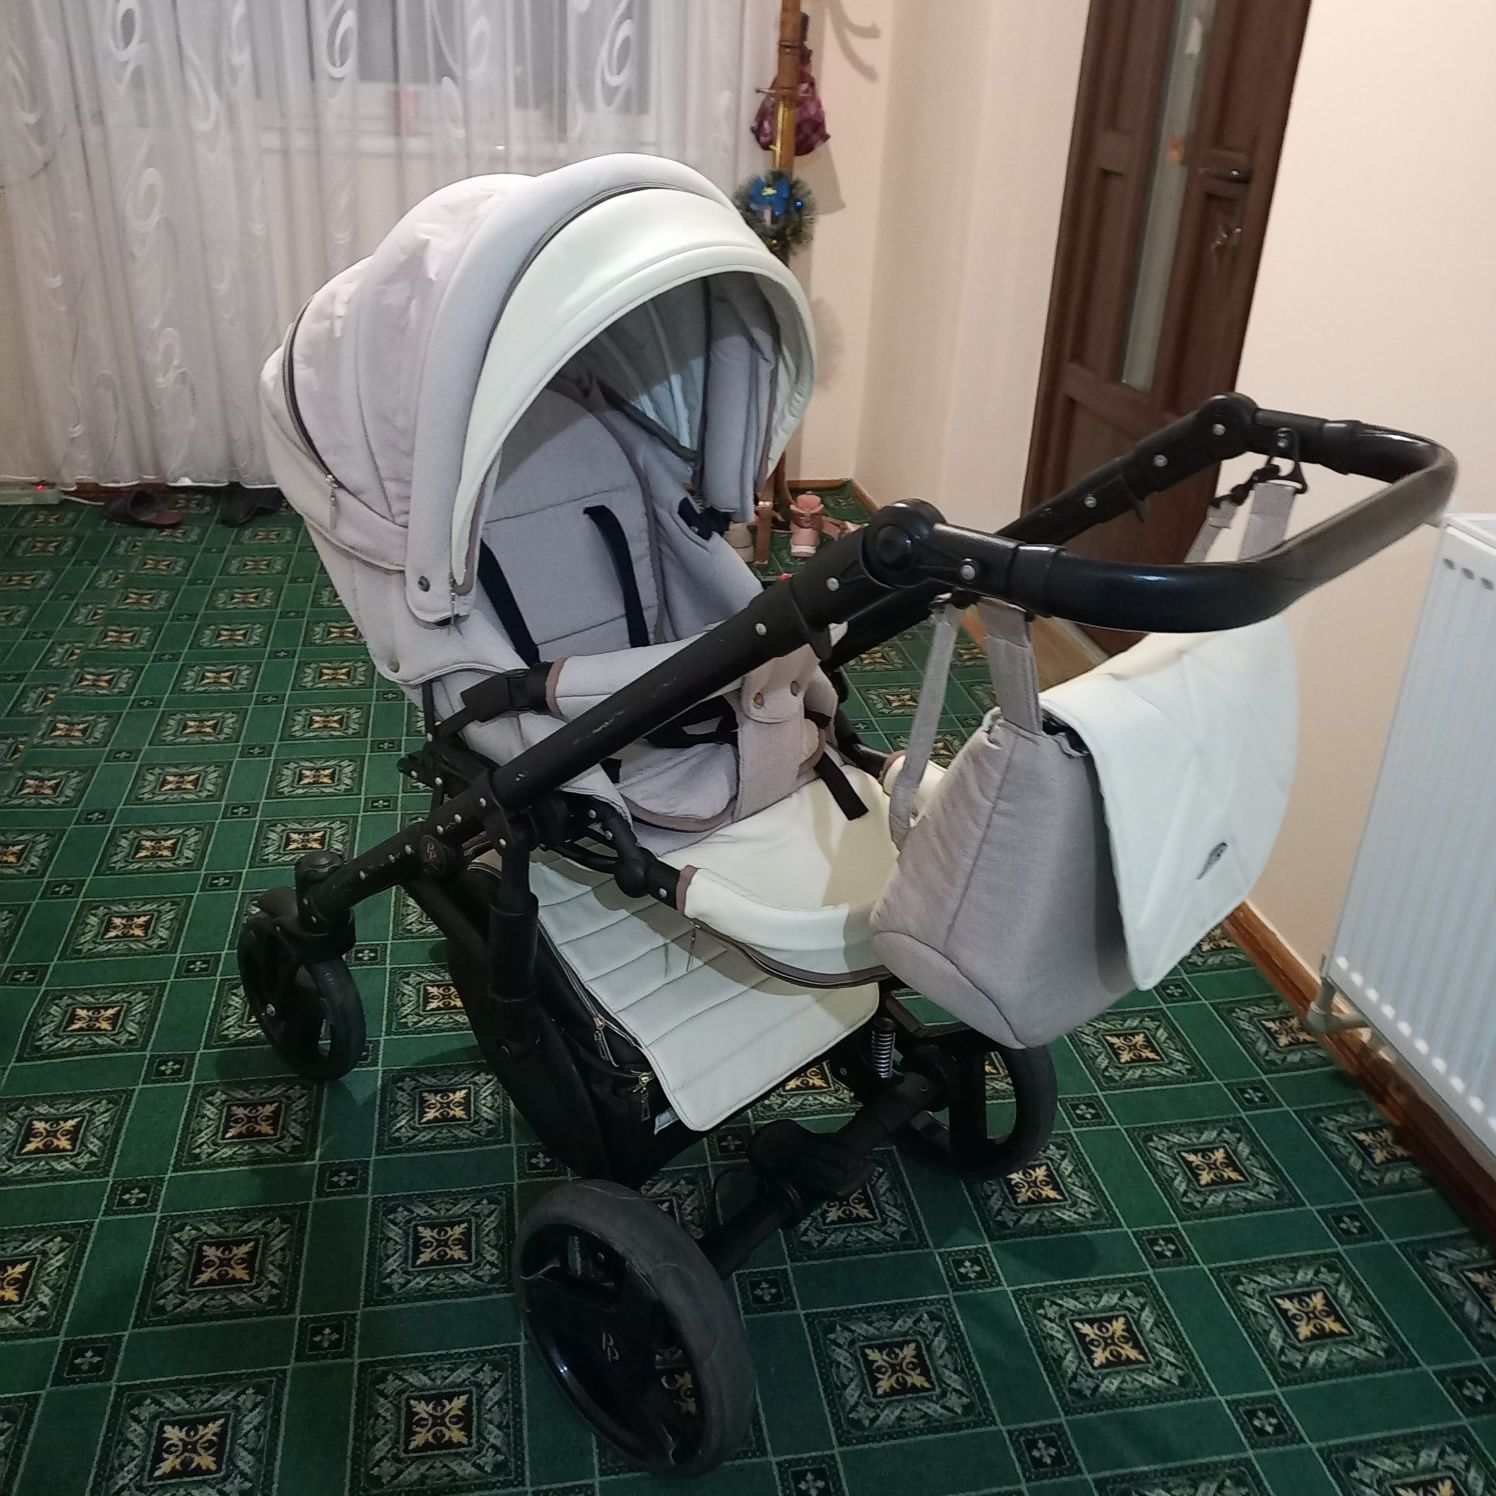 Дитяча коляска Baby Parm (Польща)  2 в 1